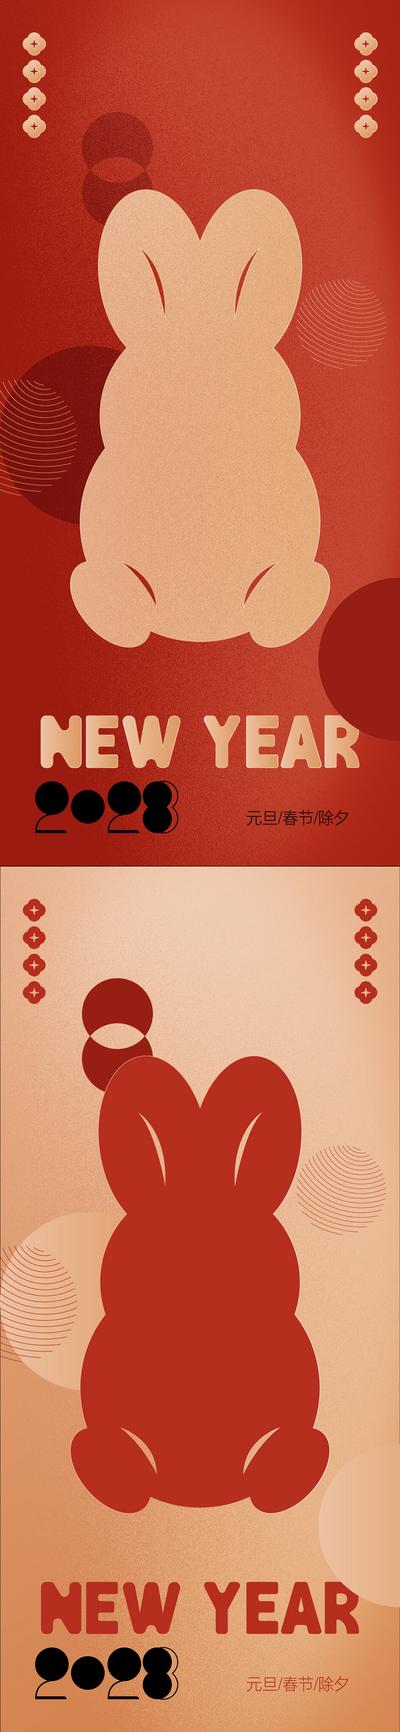 【南门网】海报 中国传统节日 长图 房地产 新春 宫灯 剪纸 铲金币 暖场活动